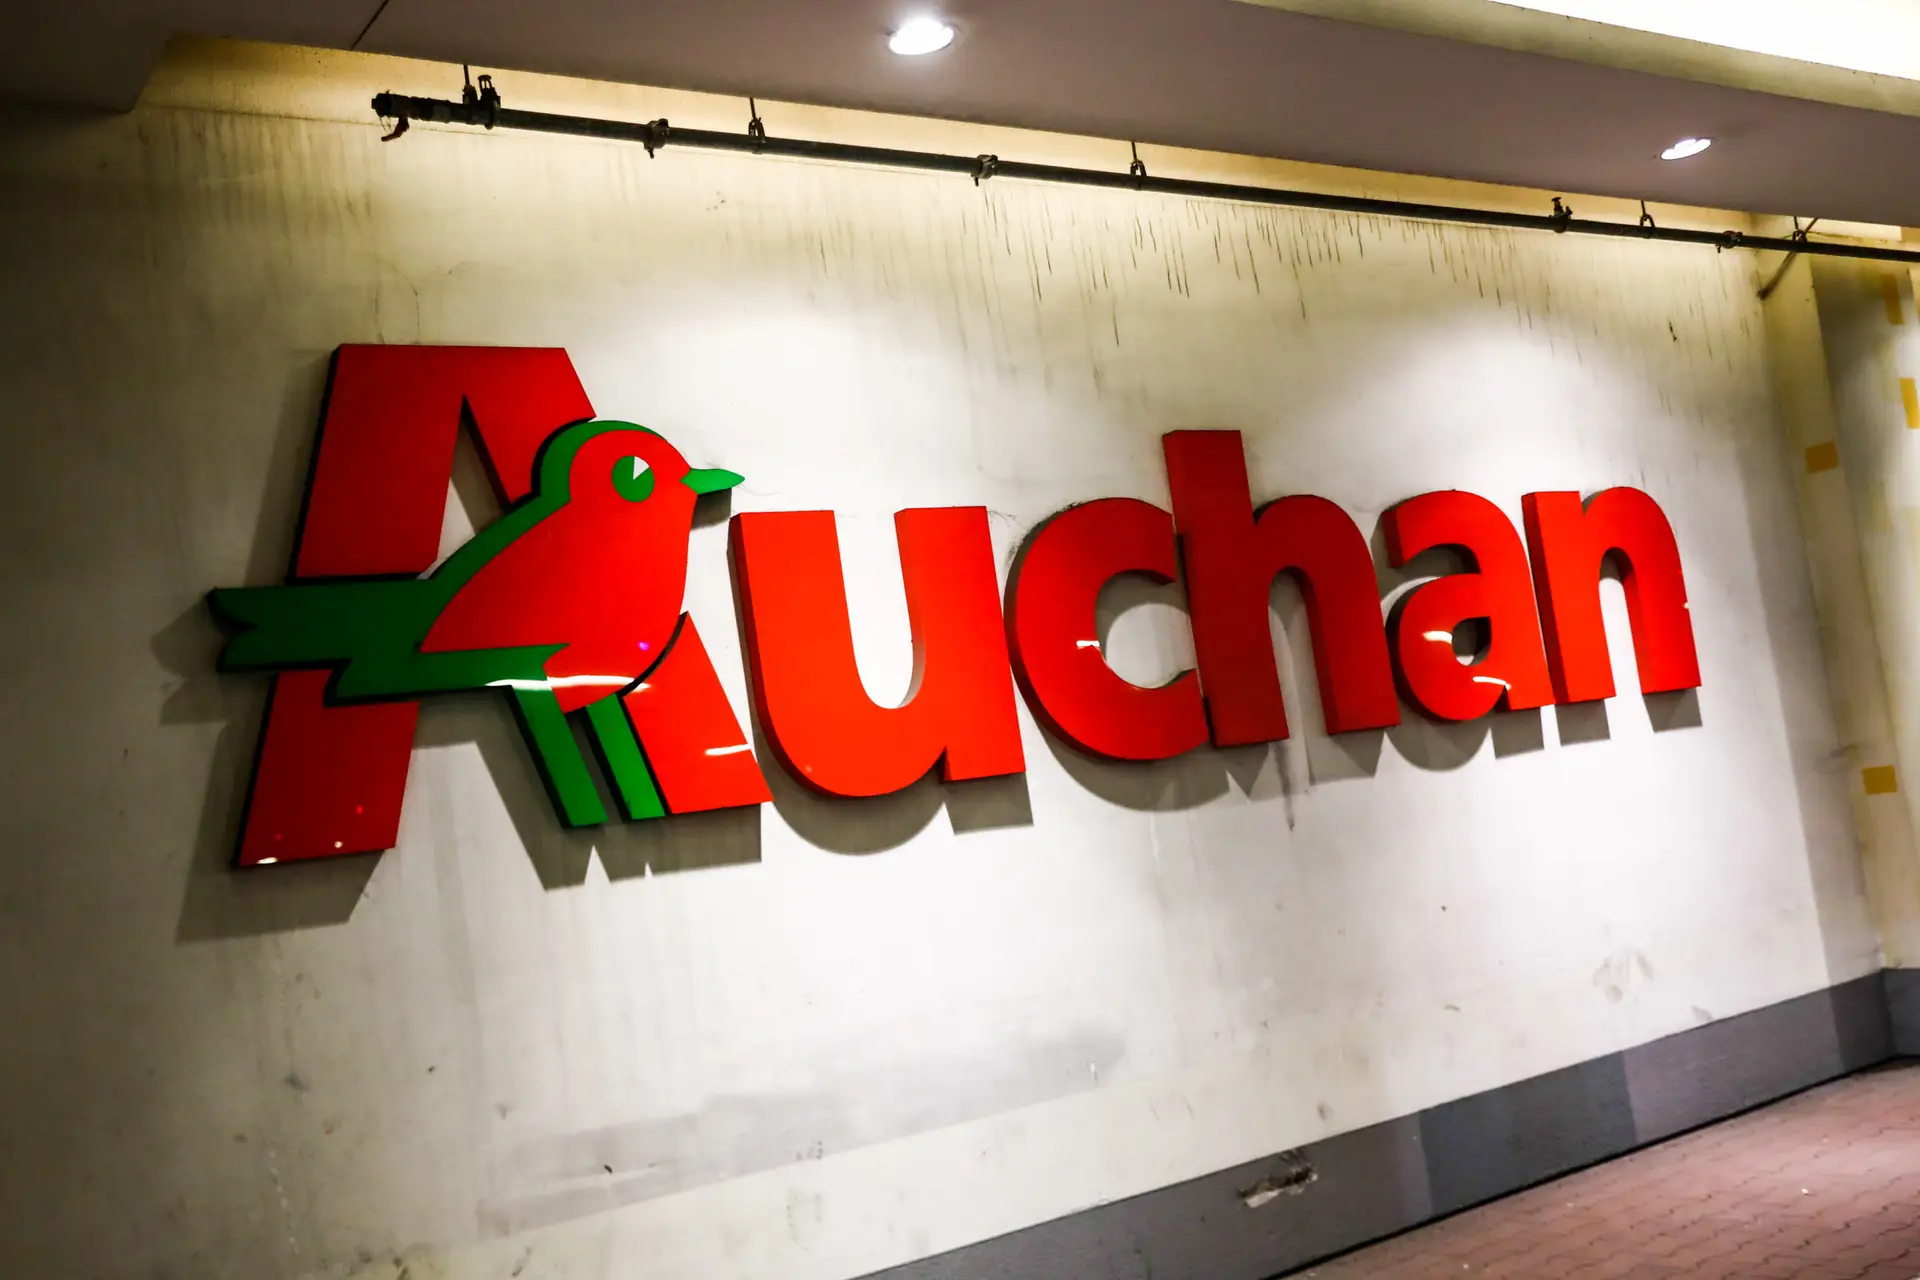 Auchan fechado no domingo de Páscoa? Foi um pedido dos trabalhadores